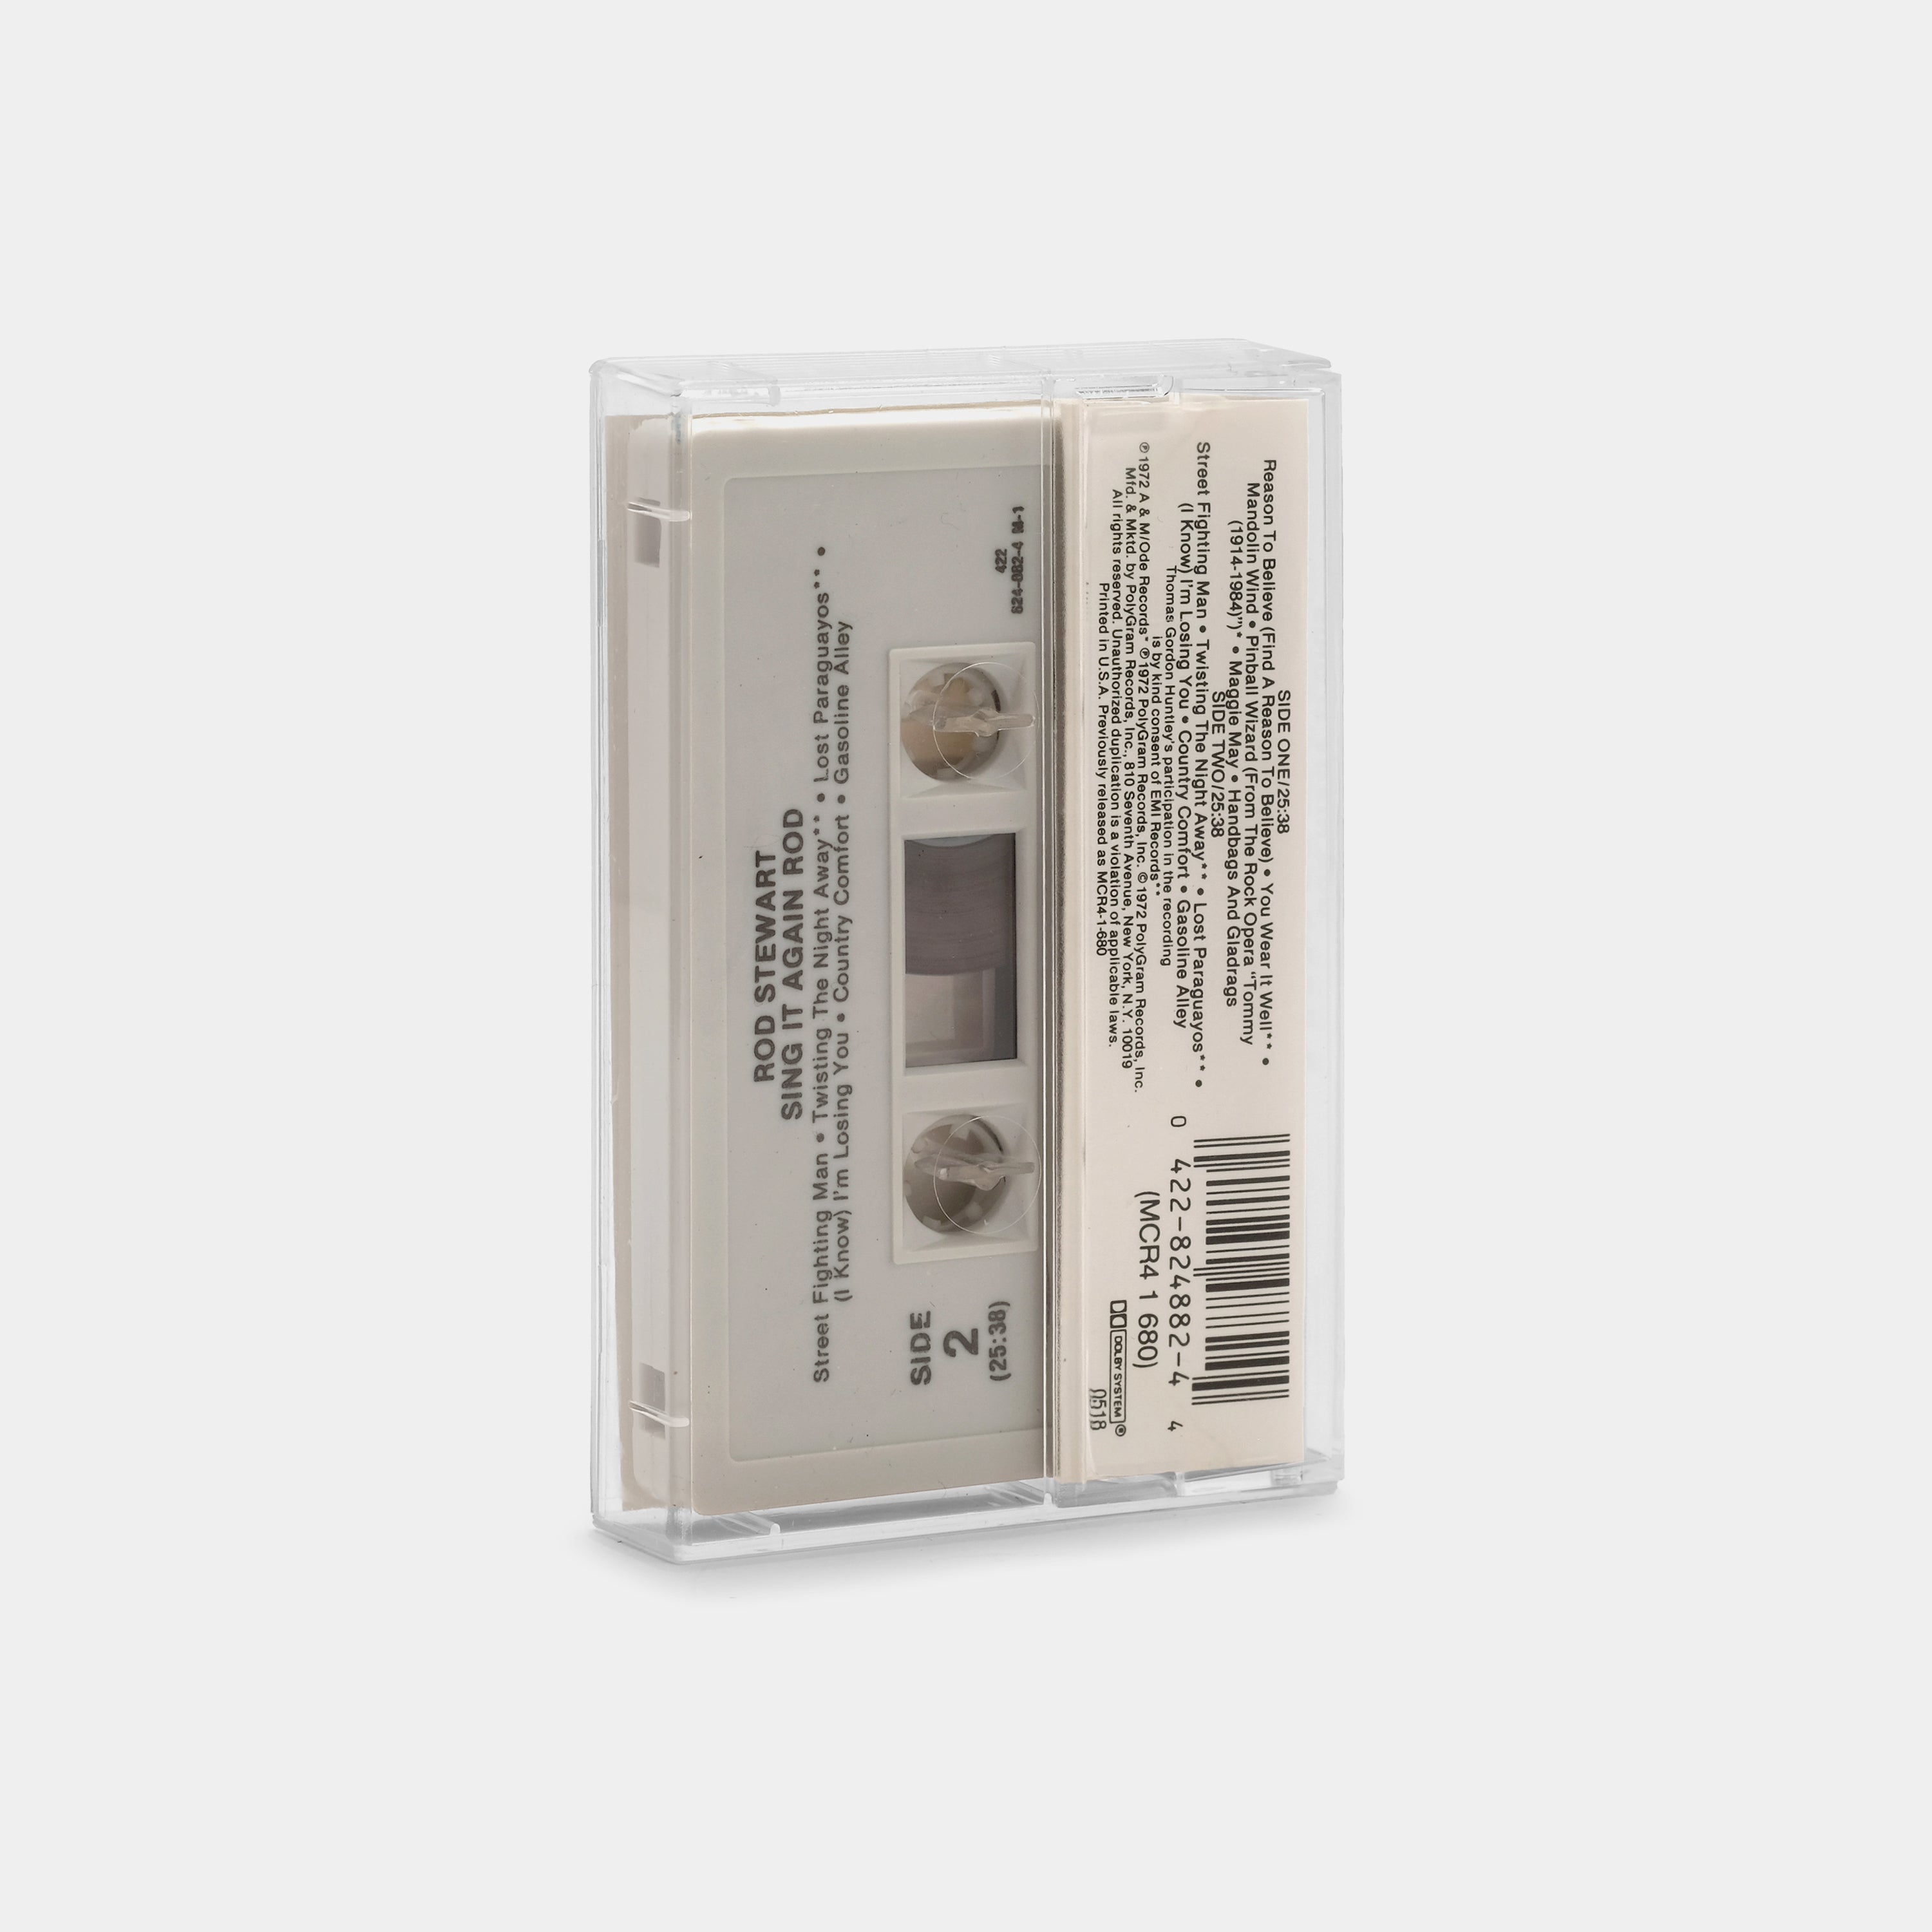 Rod Stewart - Sing It Again Rod Cassette Tape